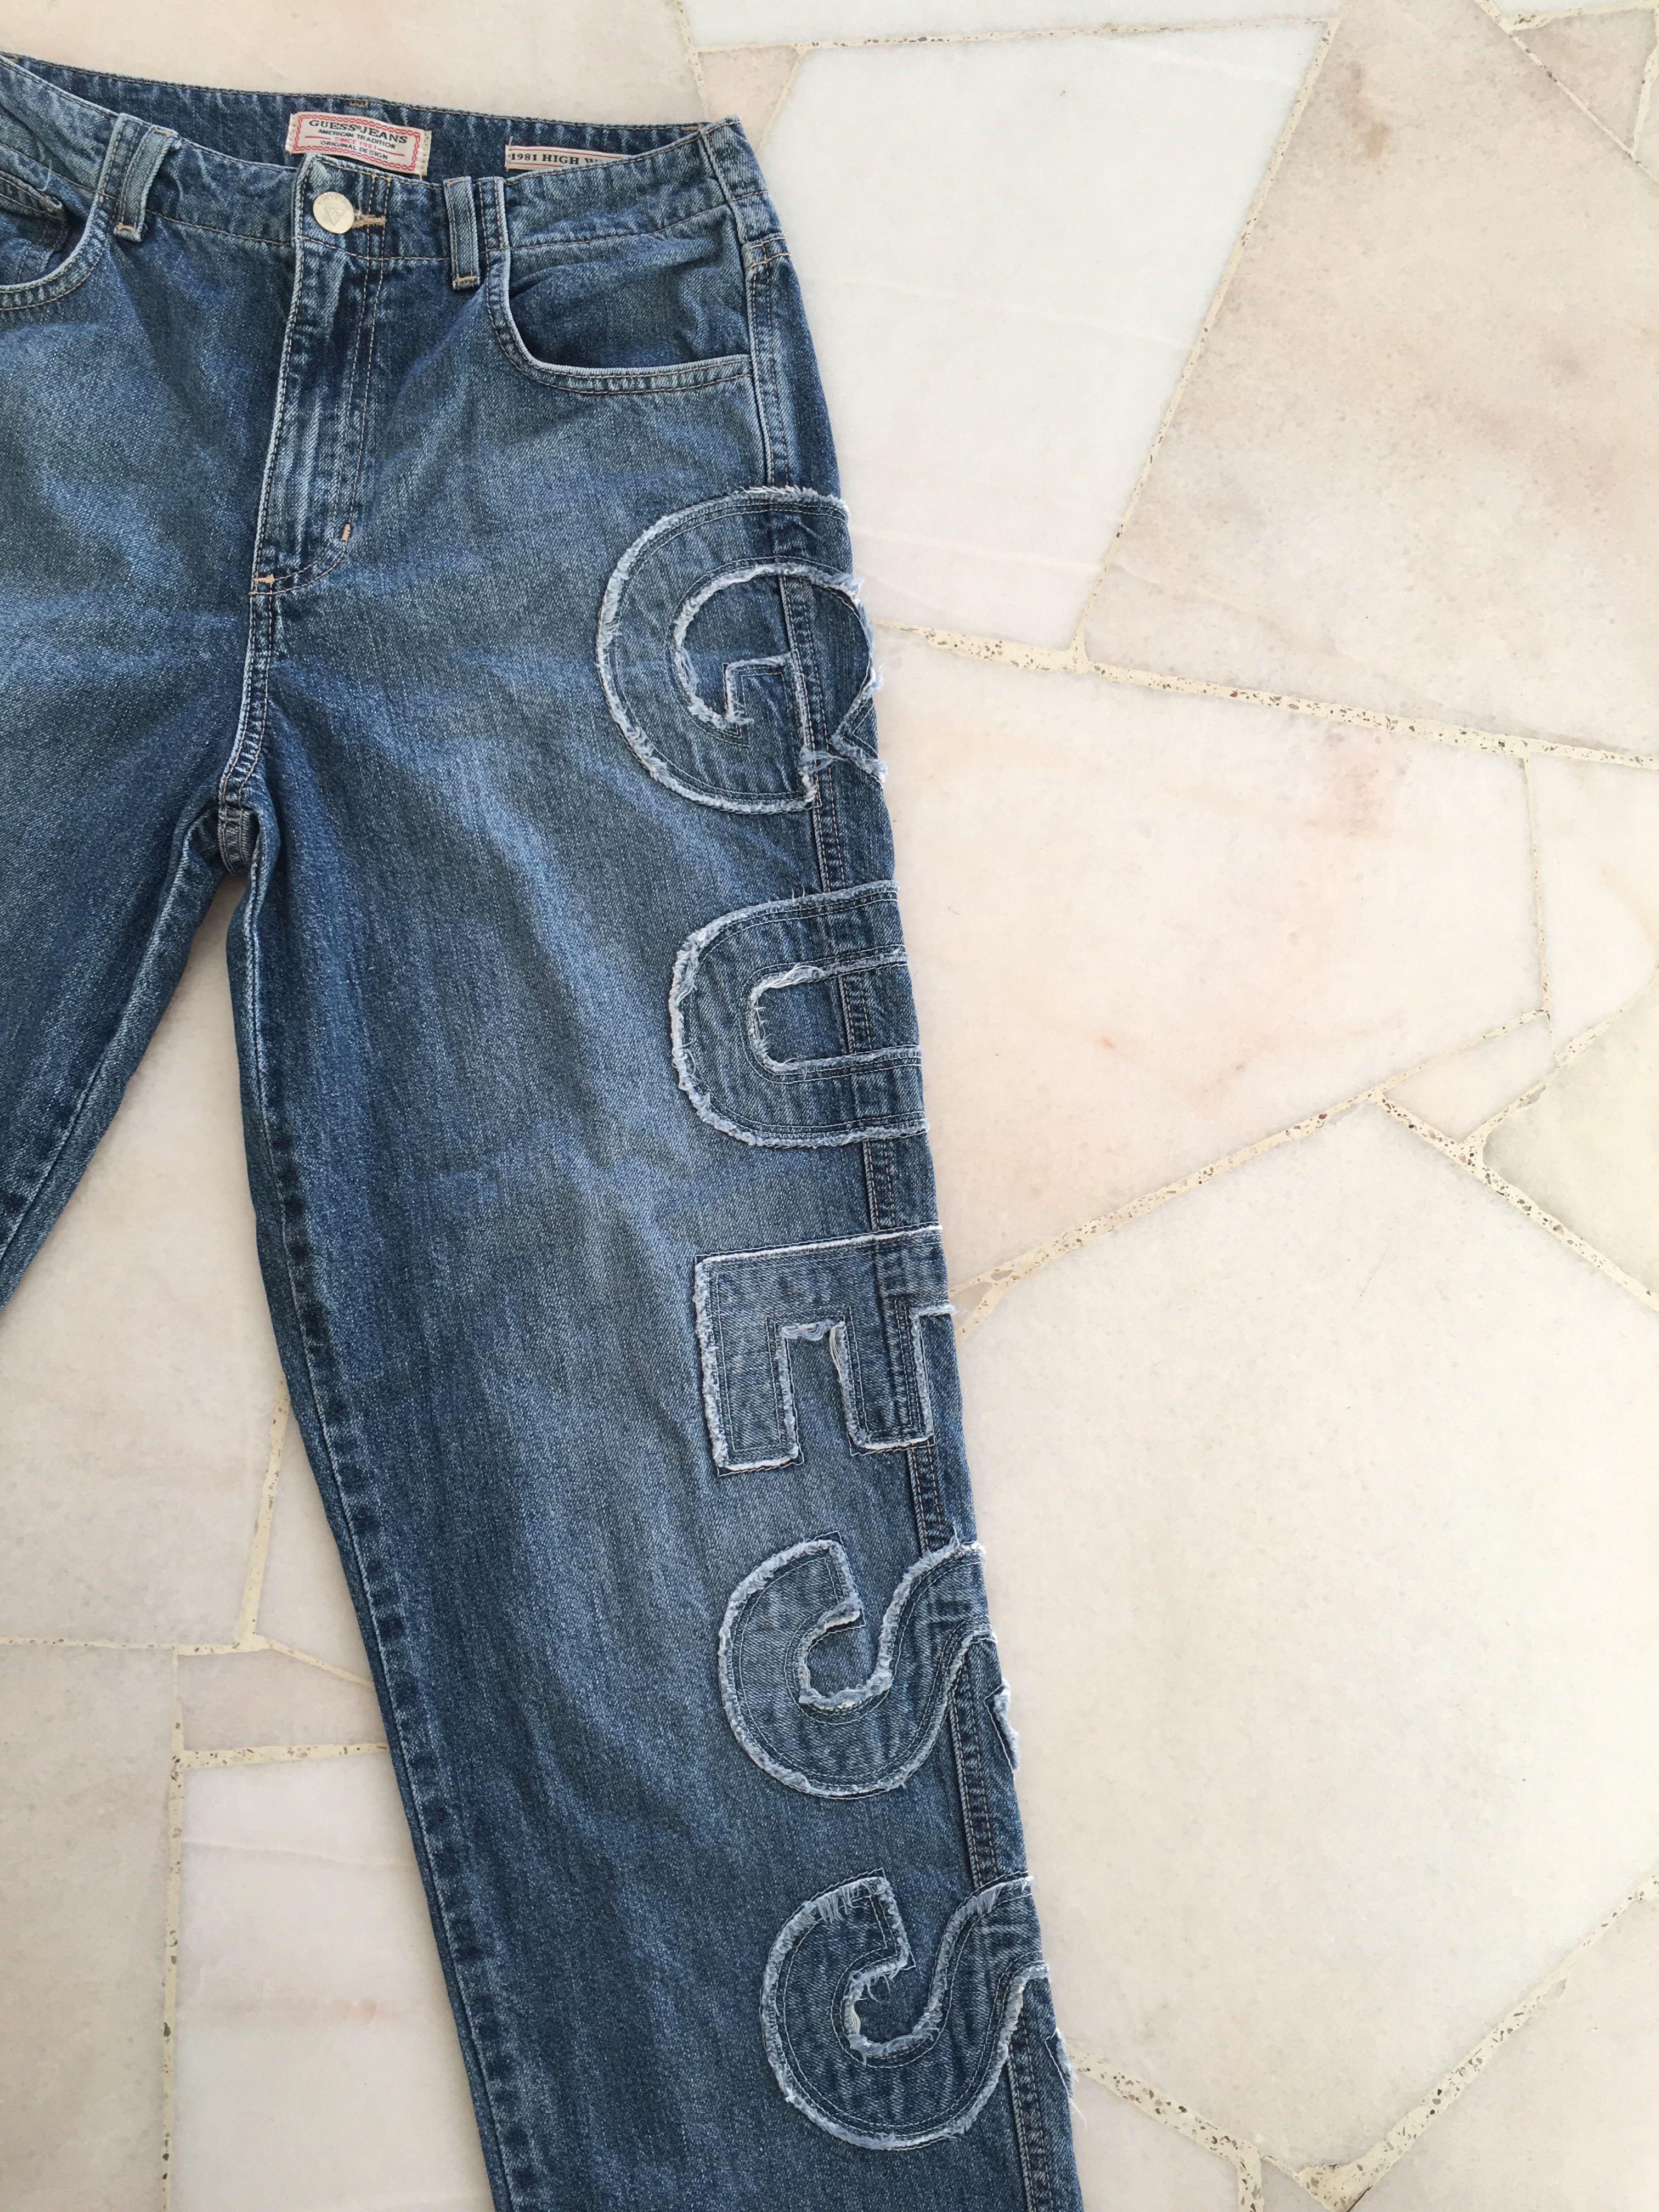 guess jeans vintage 1981